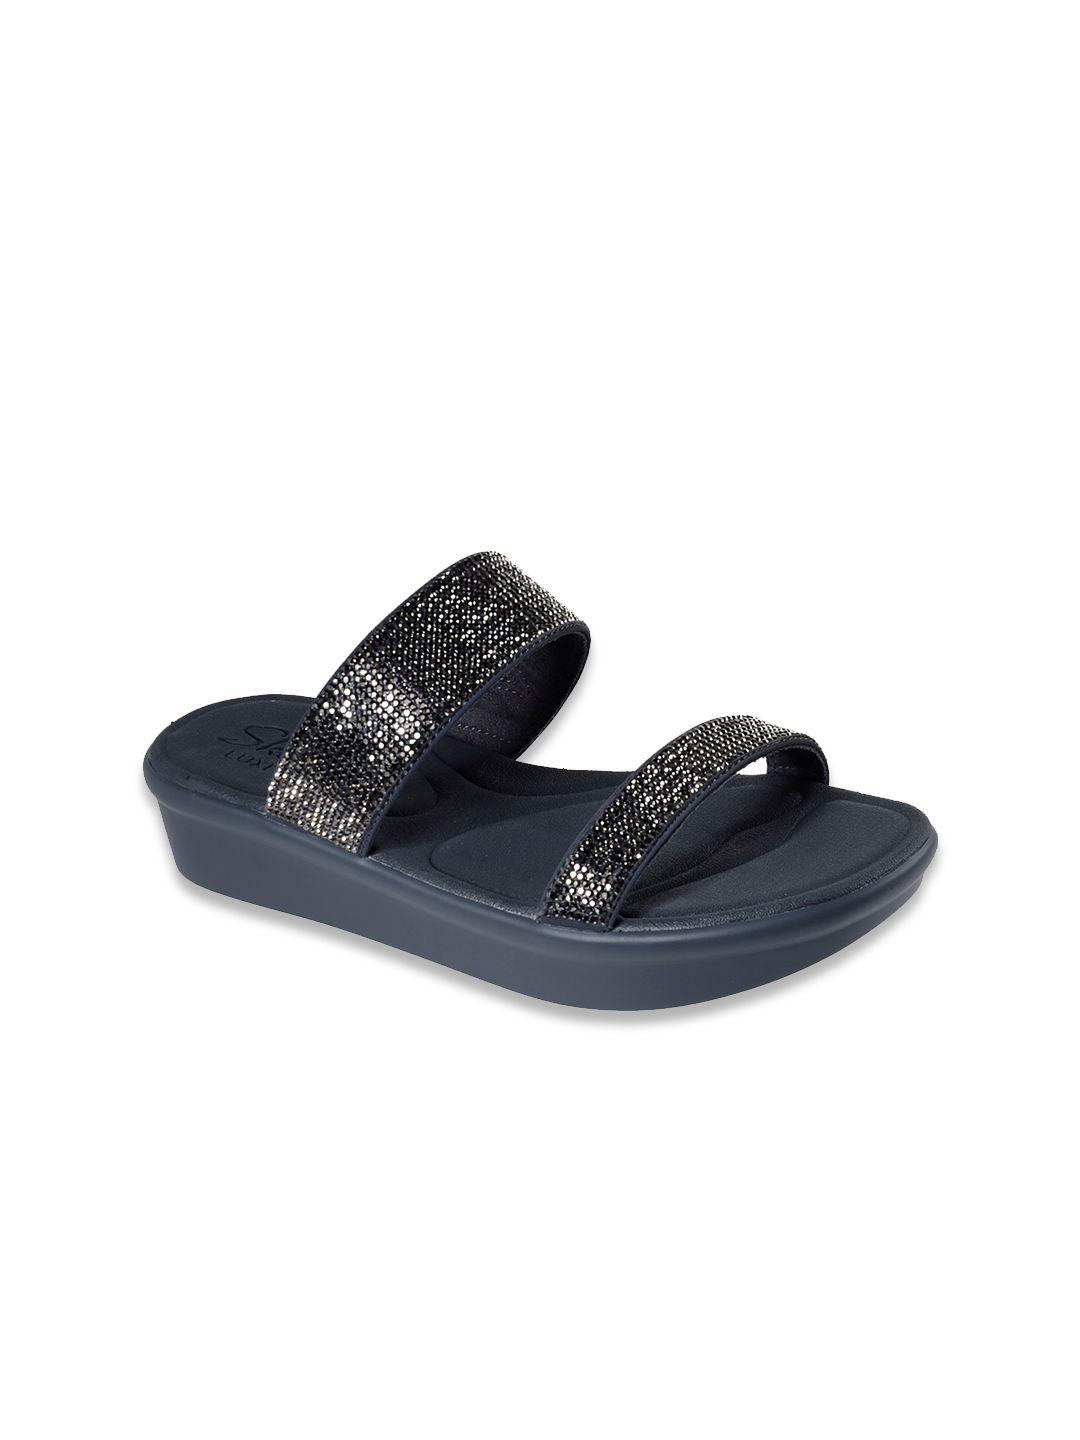 Skechers Charcoal Grey Embellished Flatform Heels